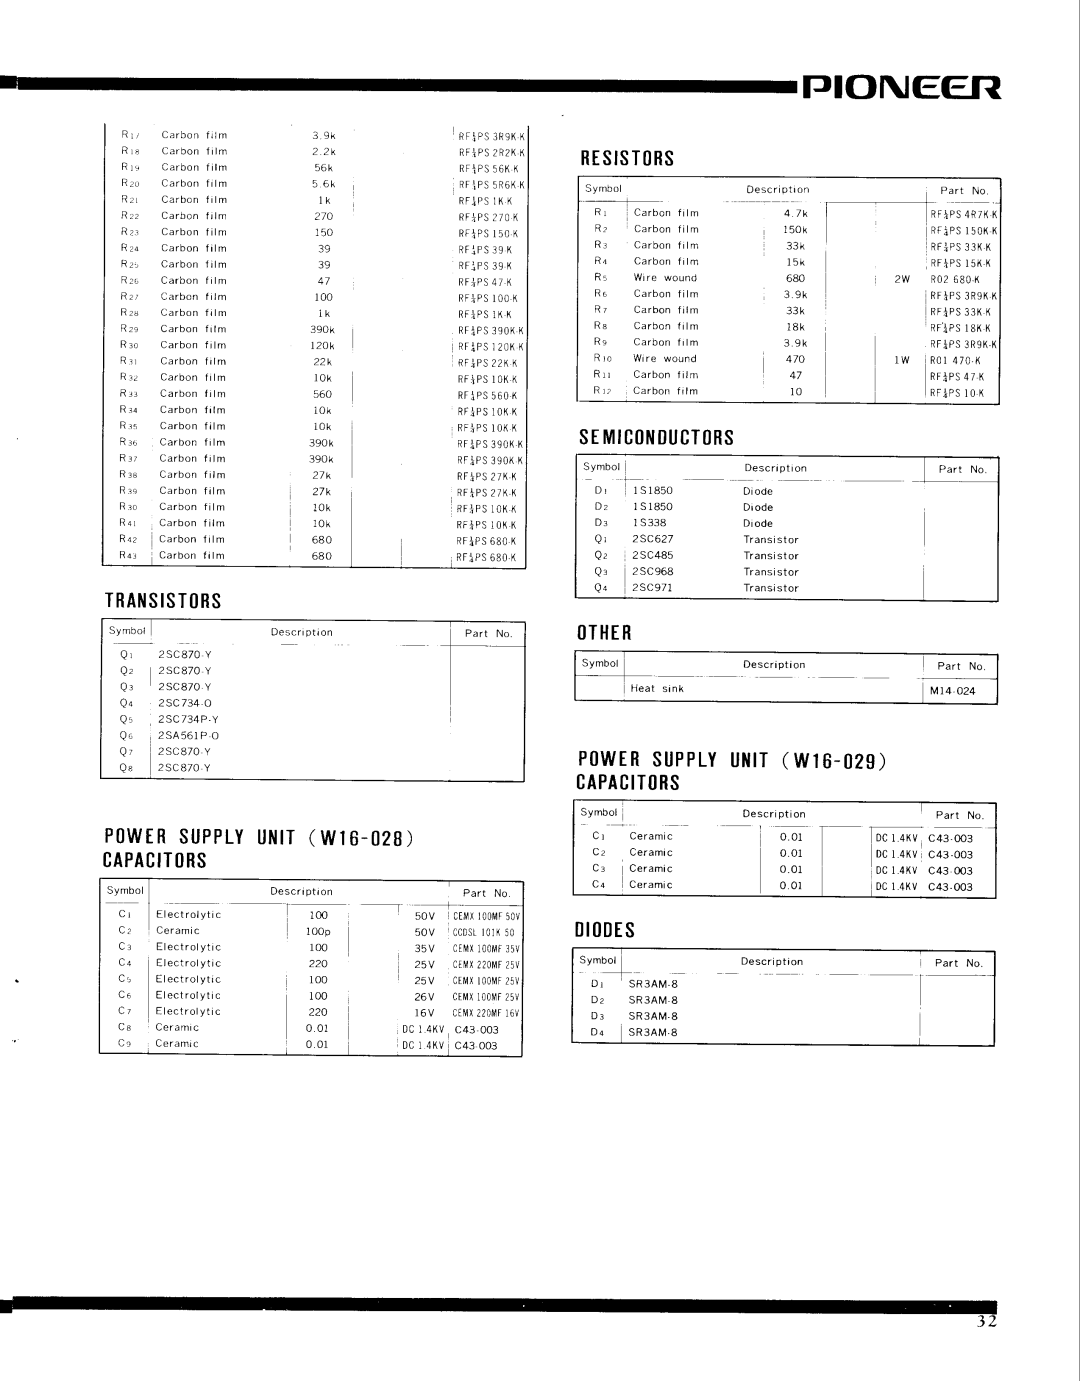 Pioneer SX-9000 service manual PtNEefil, R T S I S T R S, SEMICIIIlUCTtRS, T R A N S I S T R S, tTHER, Iides 